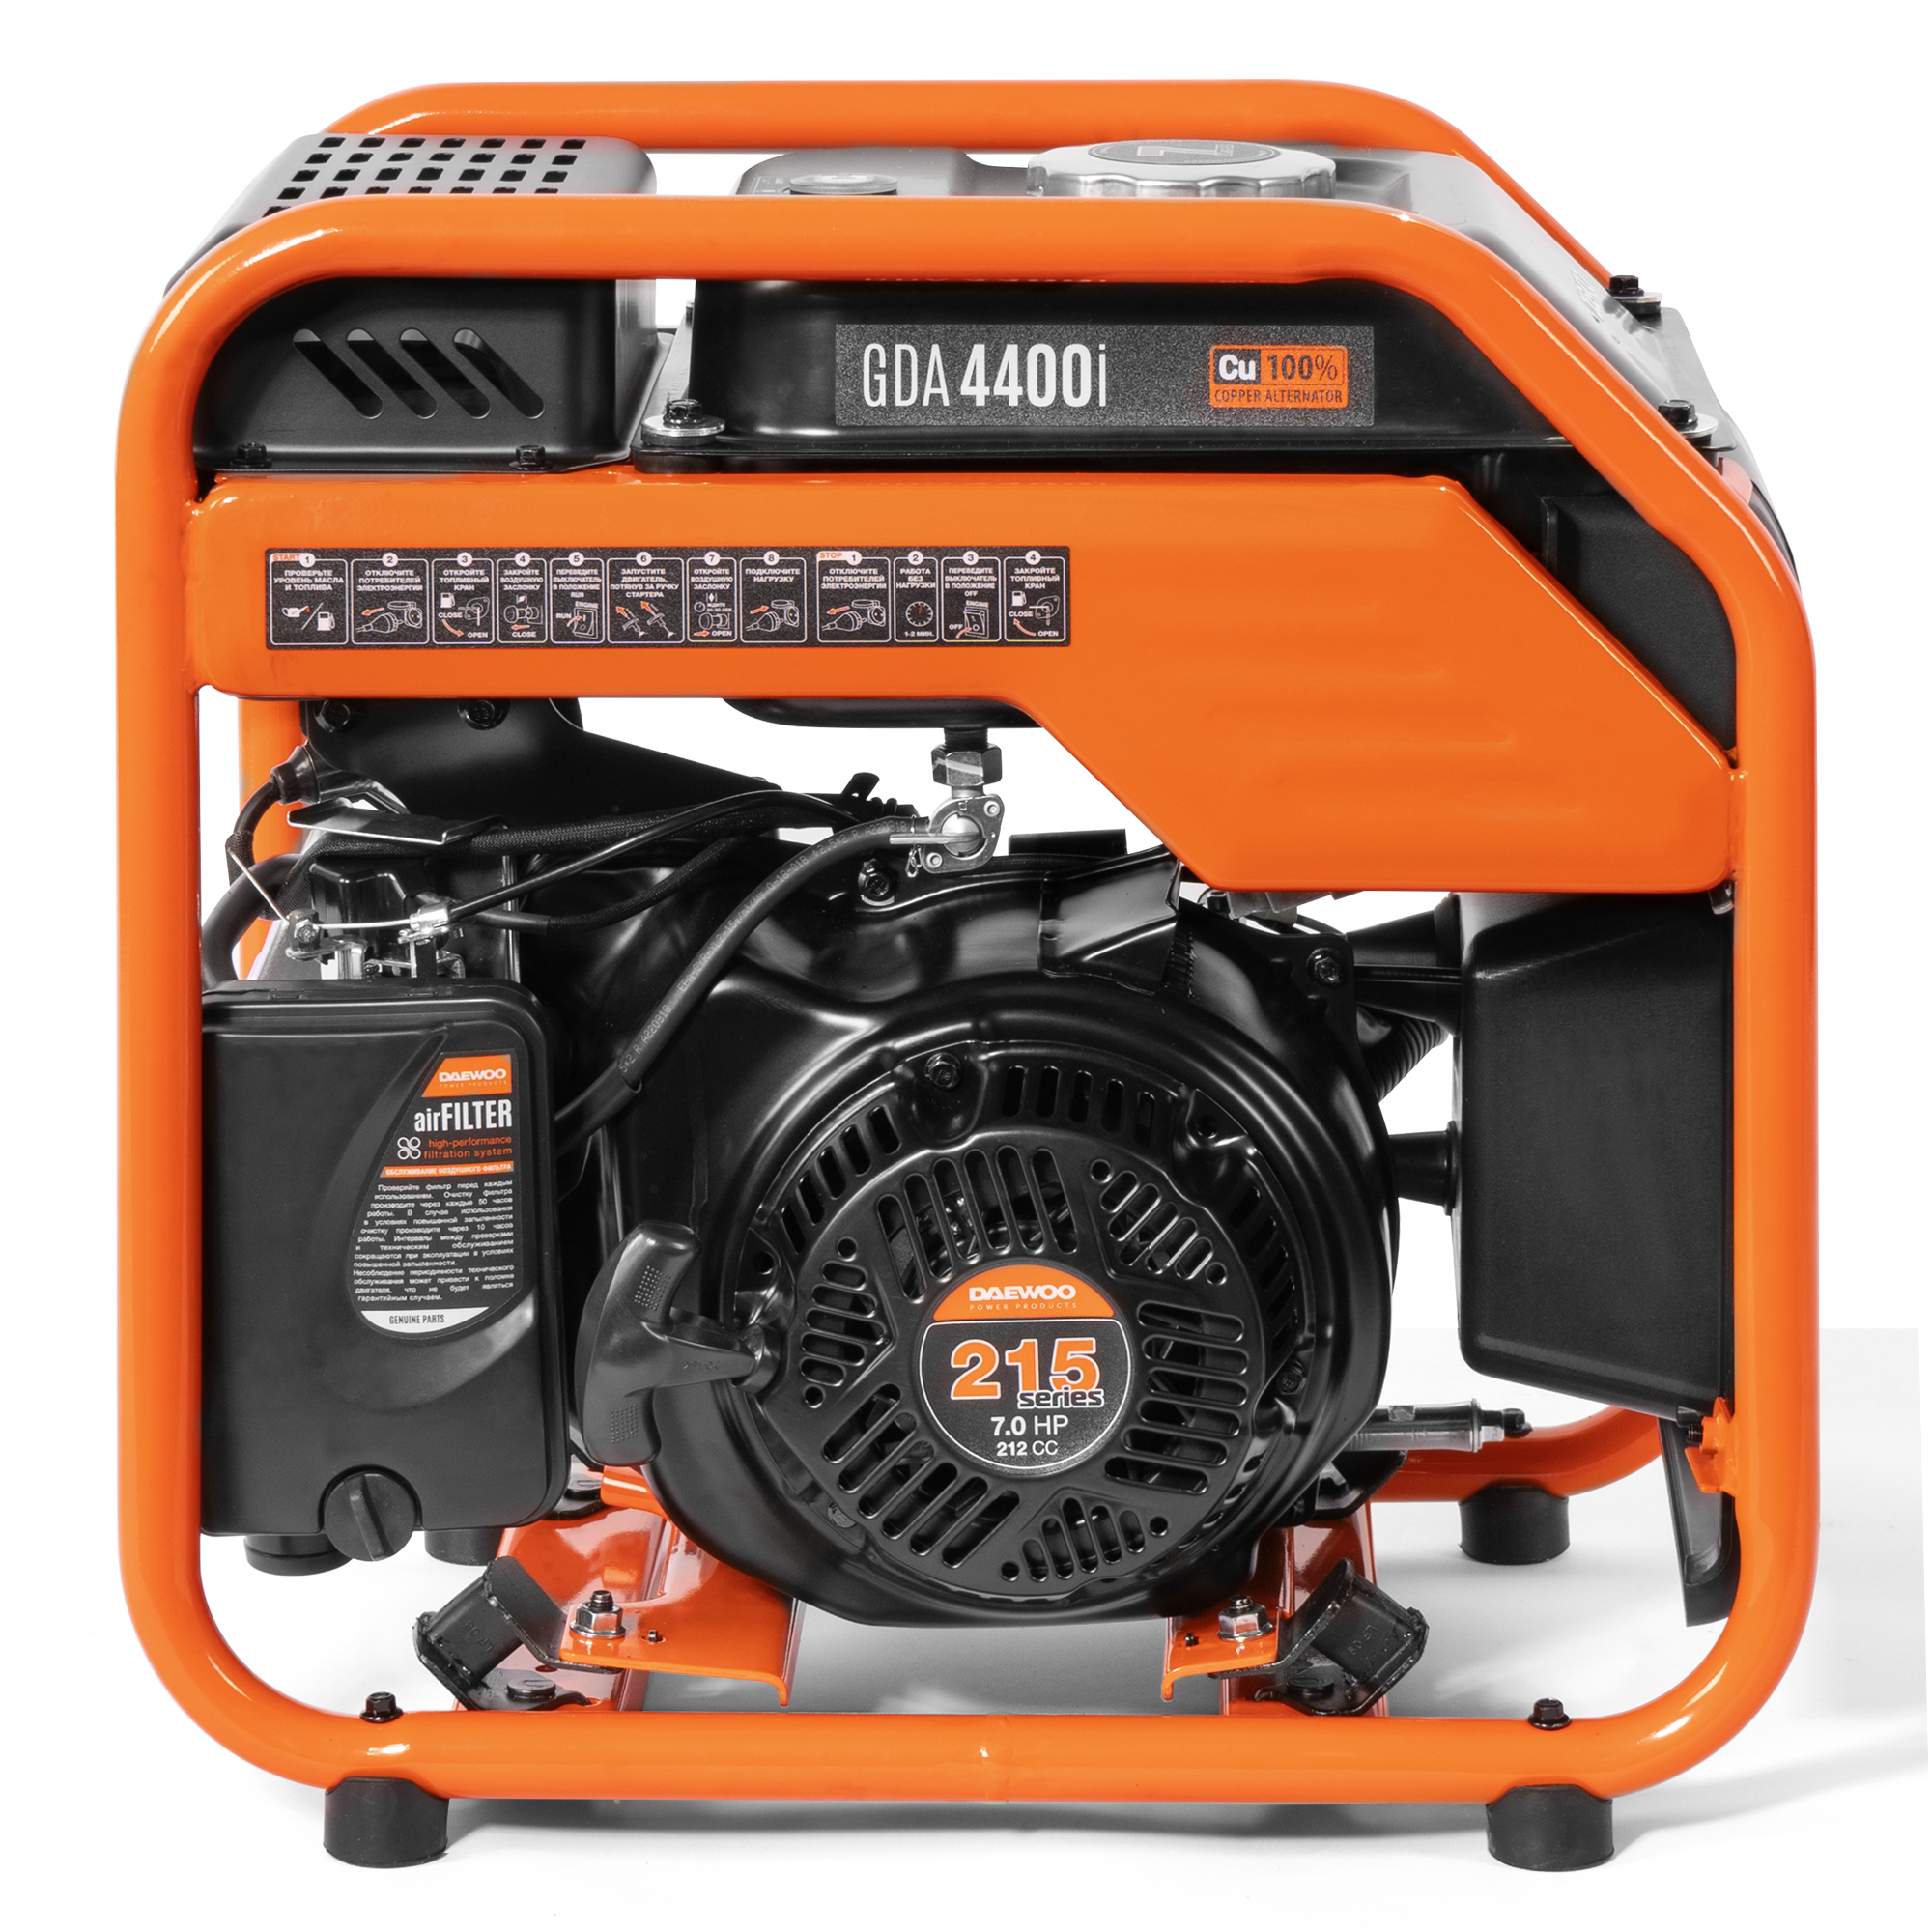 Бензиновый генератор Daewoo инверторный (GDA 4400I), цвет оранжевый series 215 - фото 4